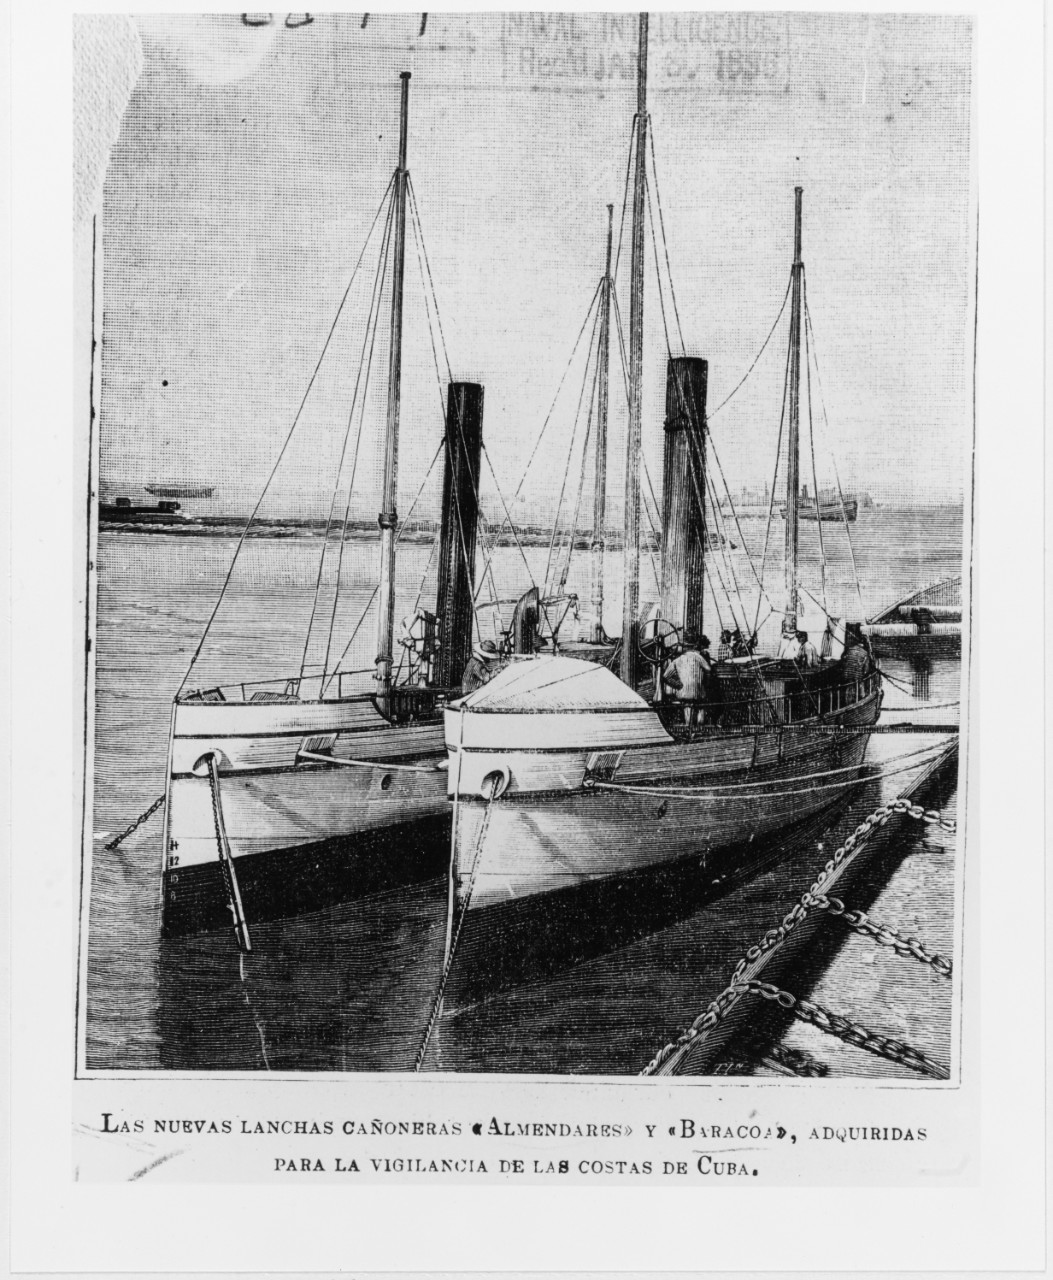 ALMENDARES (Spanish armed launch, 1895-1899)